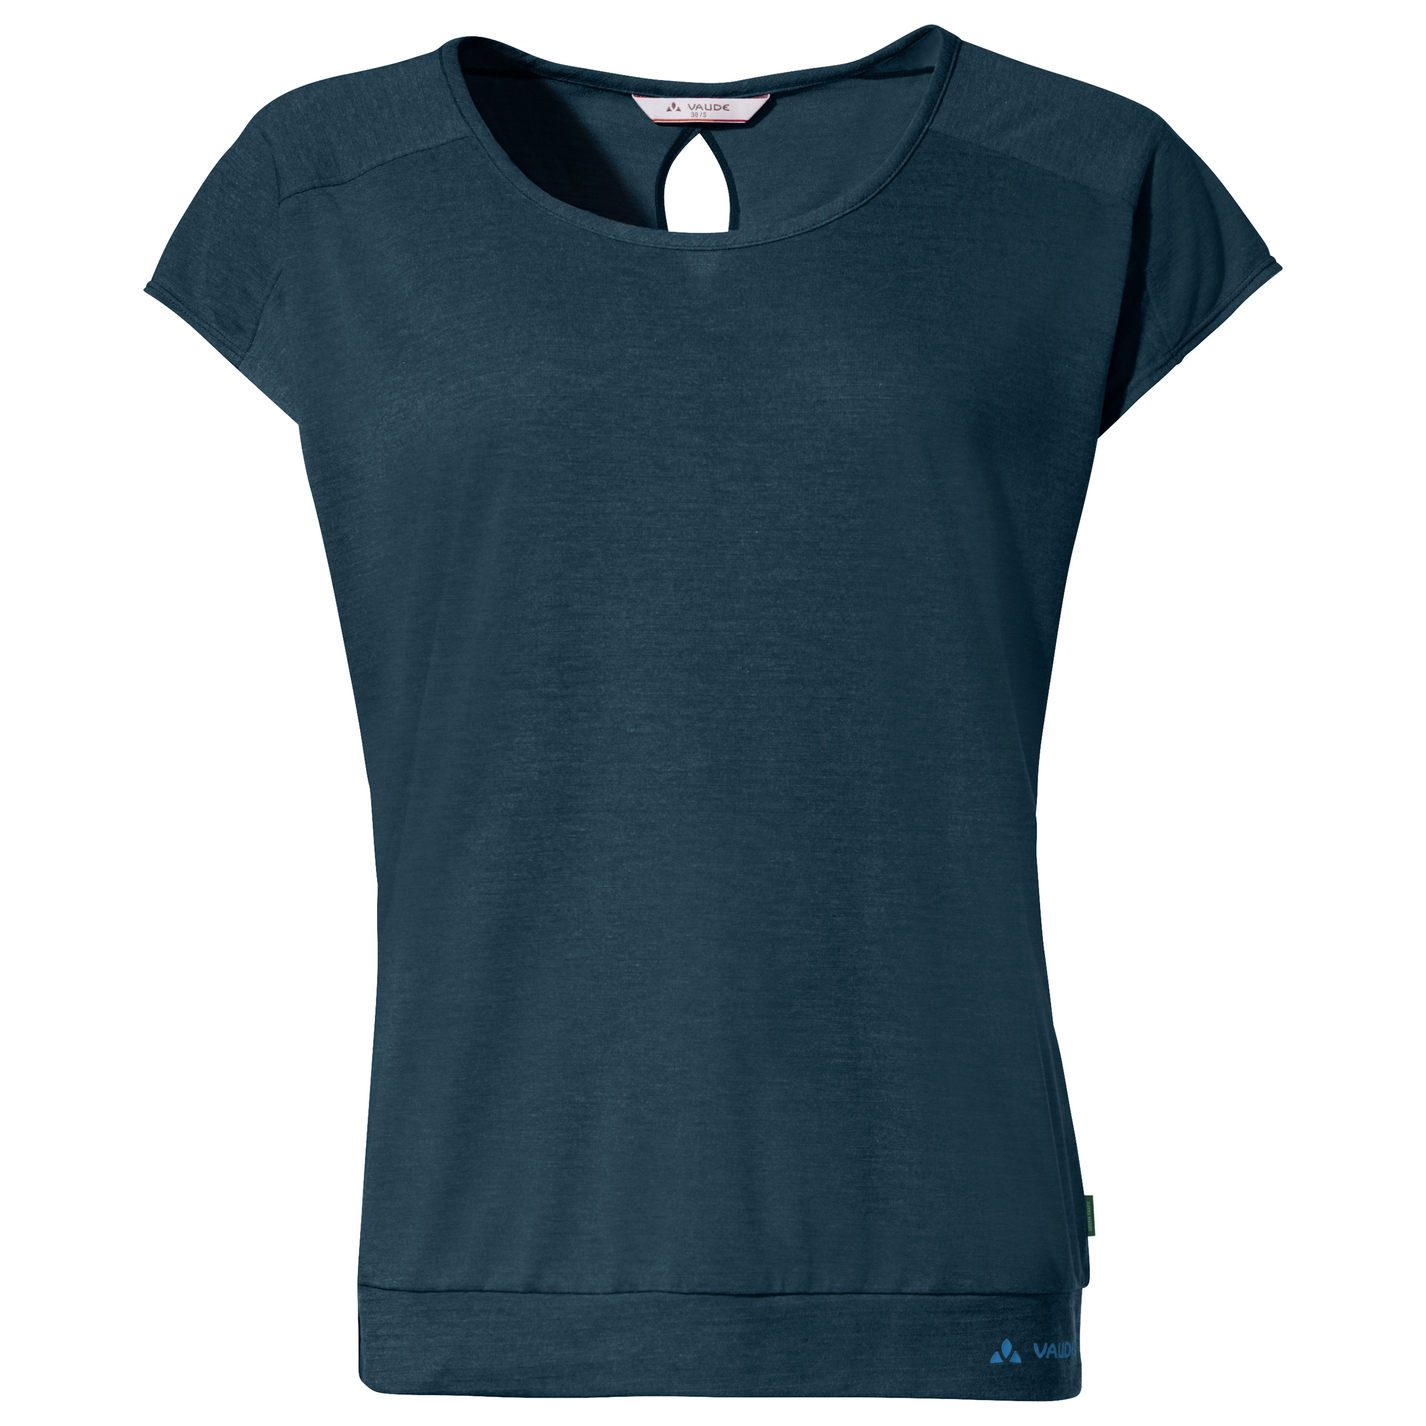 Функциональная рубашка Vaude Women's Skomer T Shirt III, цвет Dark Sea